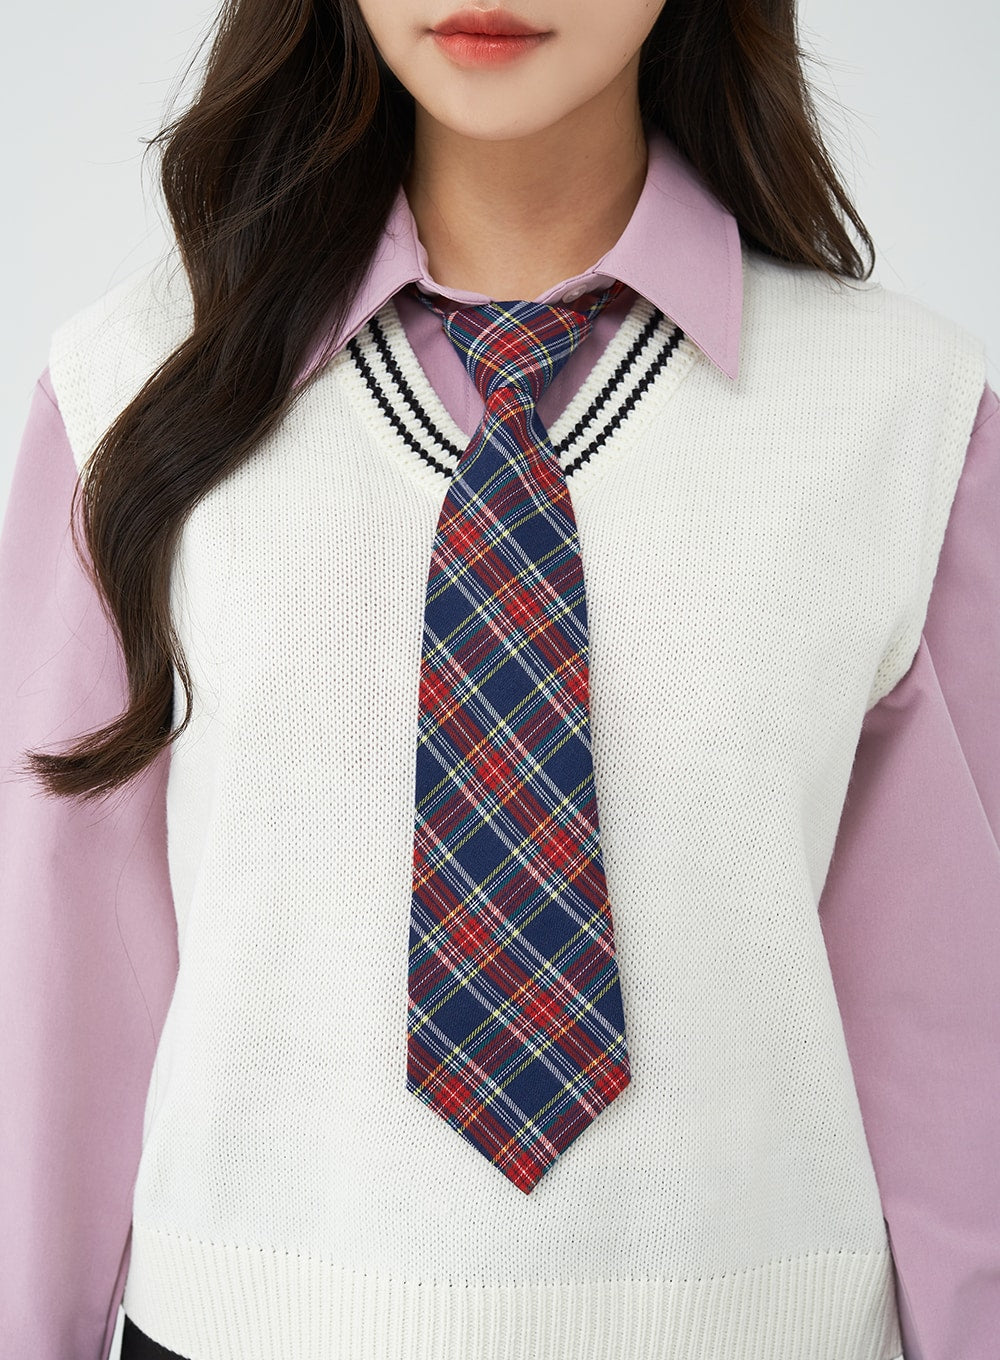 Highteen Cute Necktie BG03